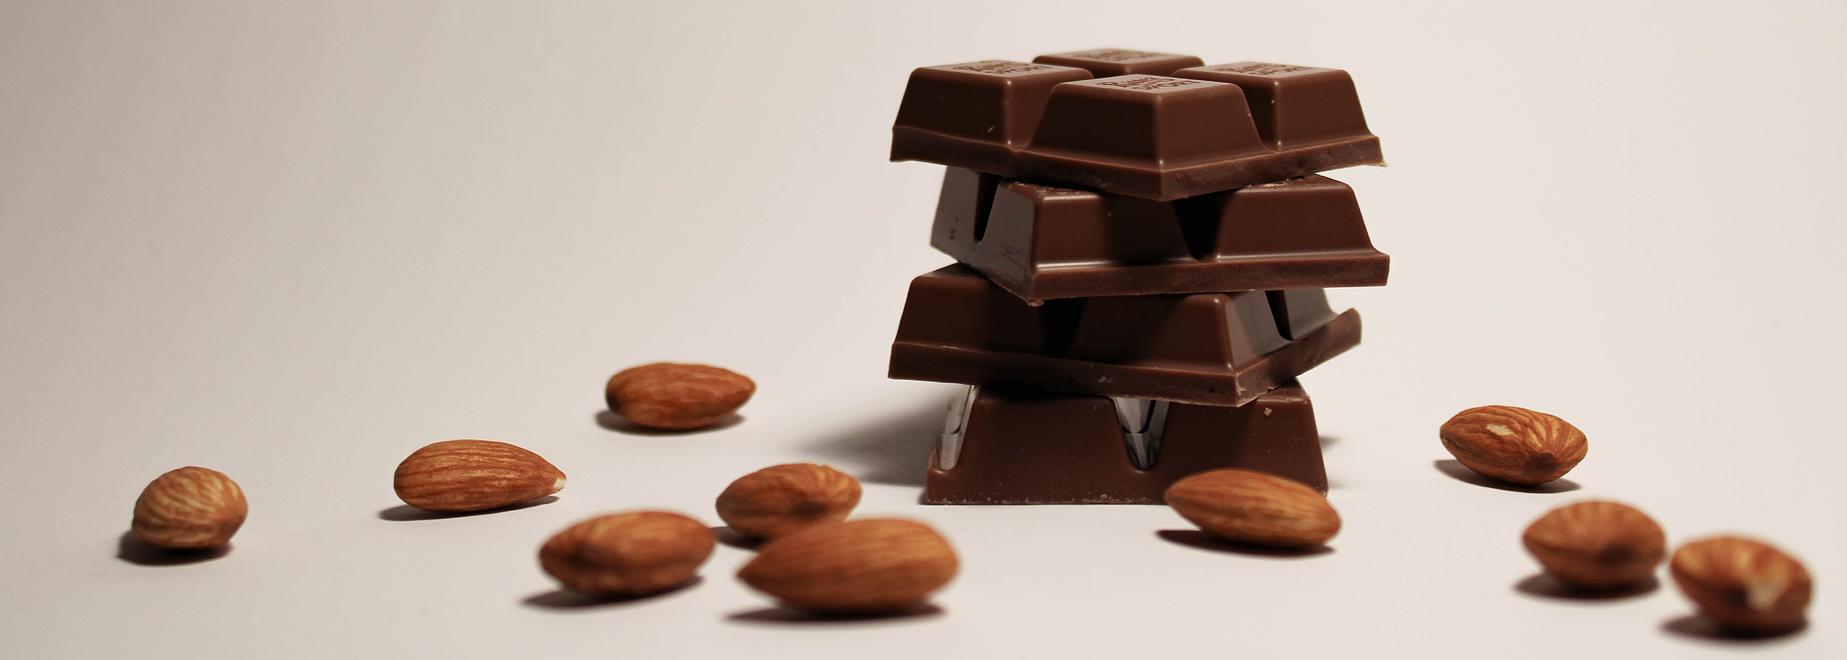 Leonidas Avant Cap Plan de Campagne Centre commercial Magasin Chocolat Alimentation Shopping